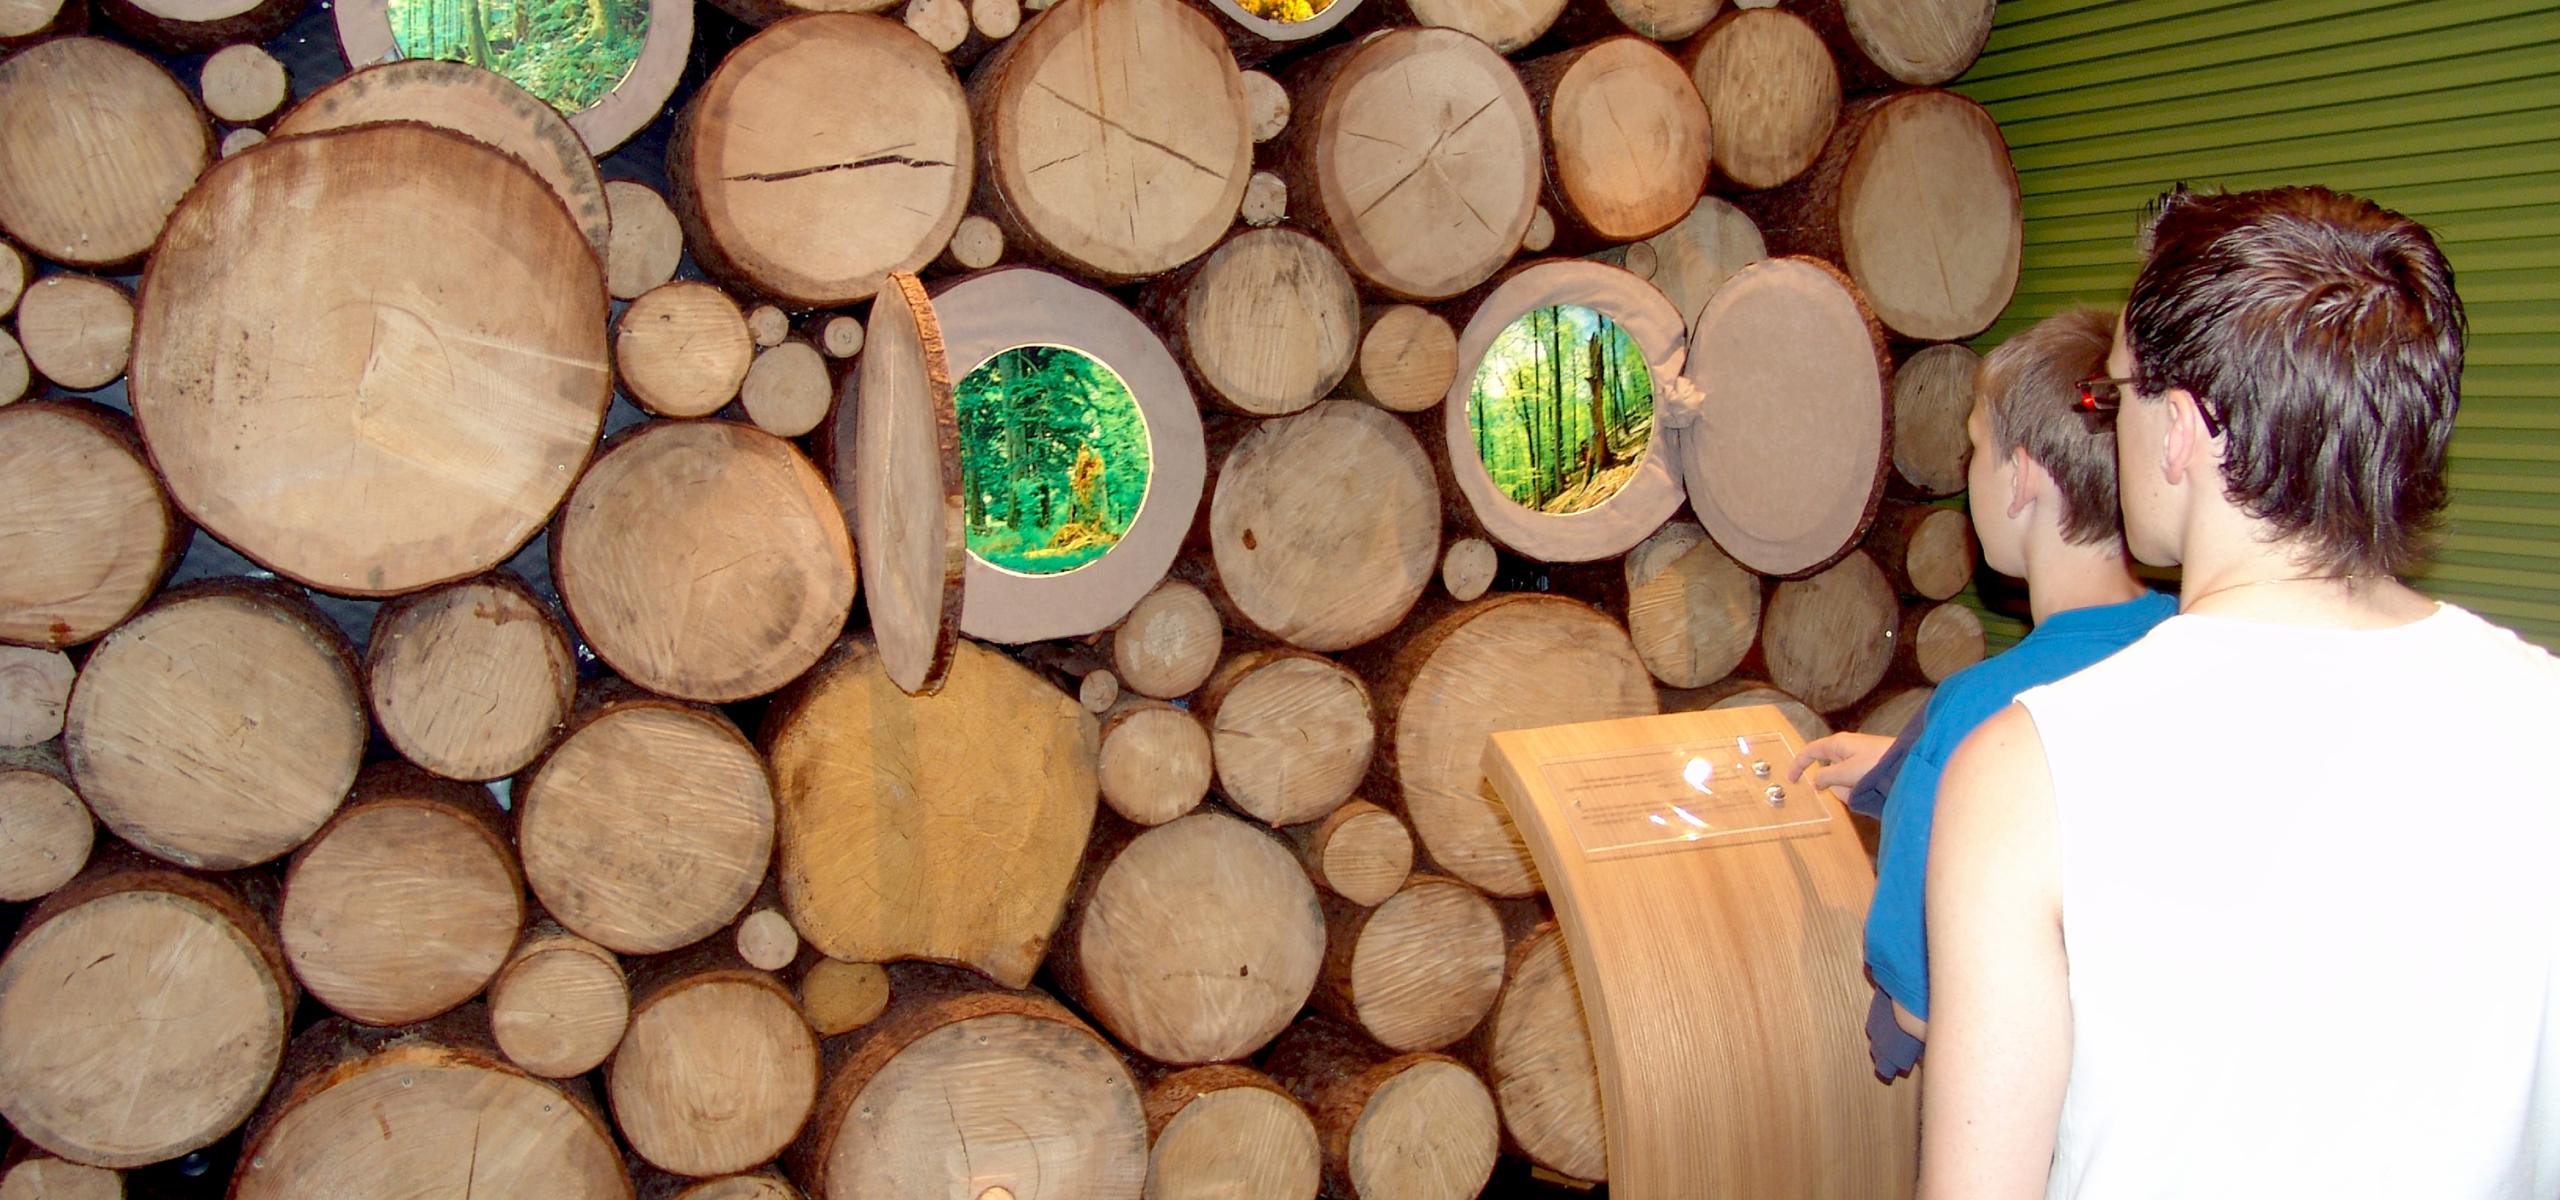 Výstavní prvek zobrazuje kmeny stromů, na jejichž řezané ploše se otevírají okna s lesními obrázky.